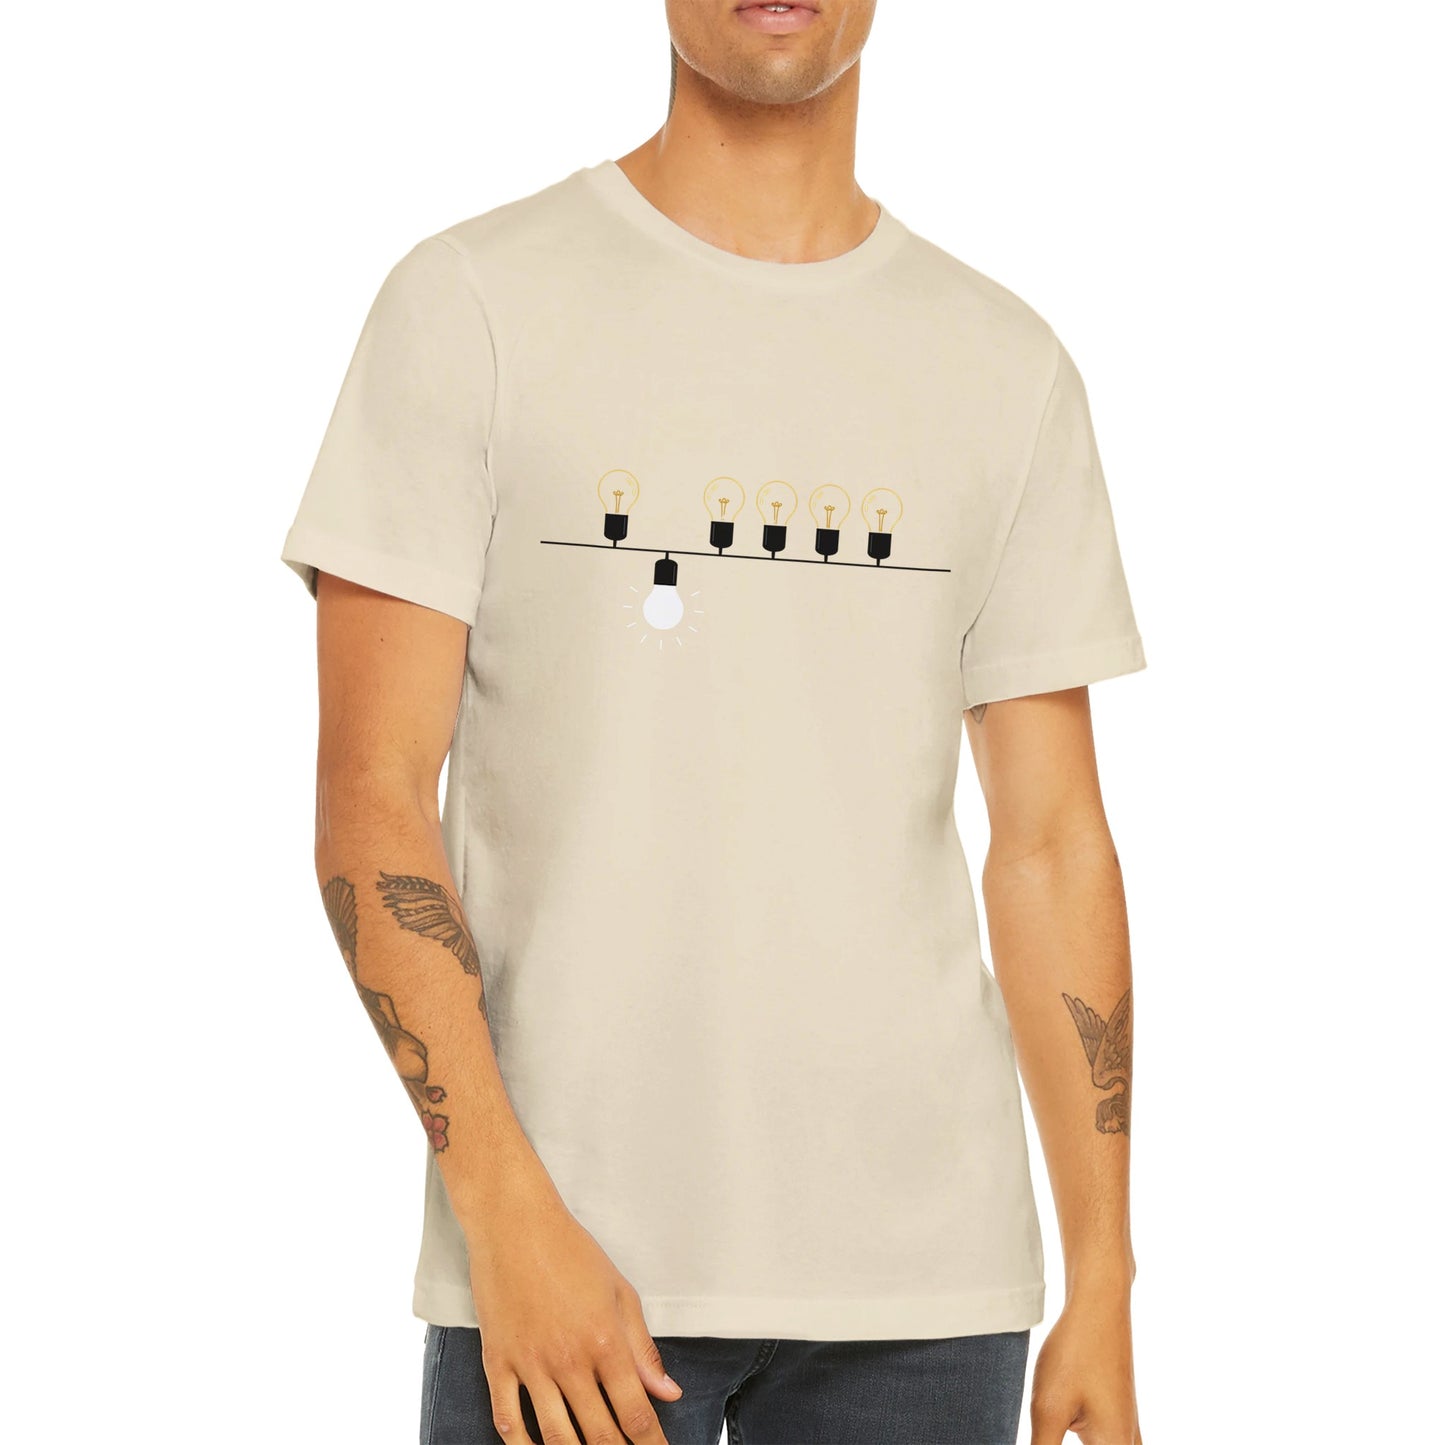 Budget Unisex Crewneck T-shirt/Smart-Lamps